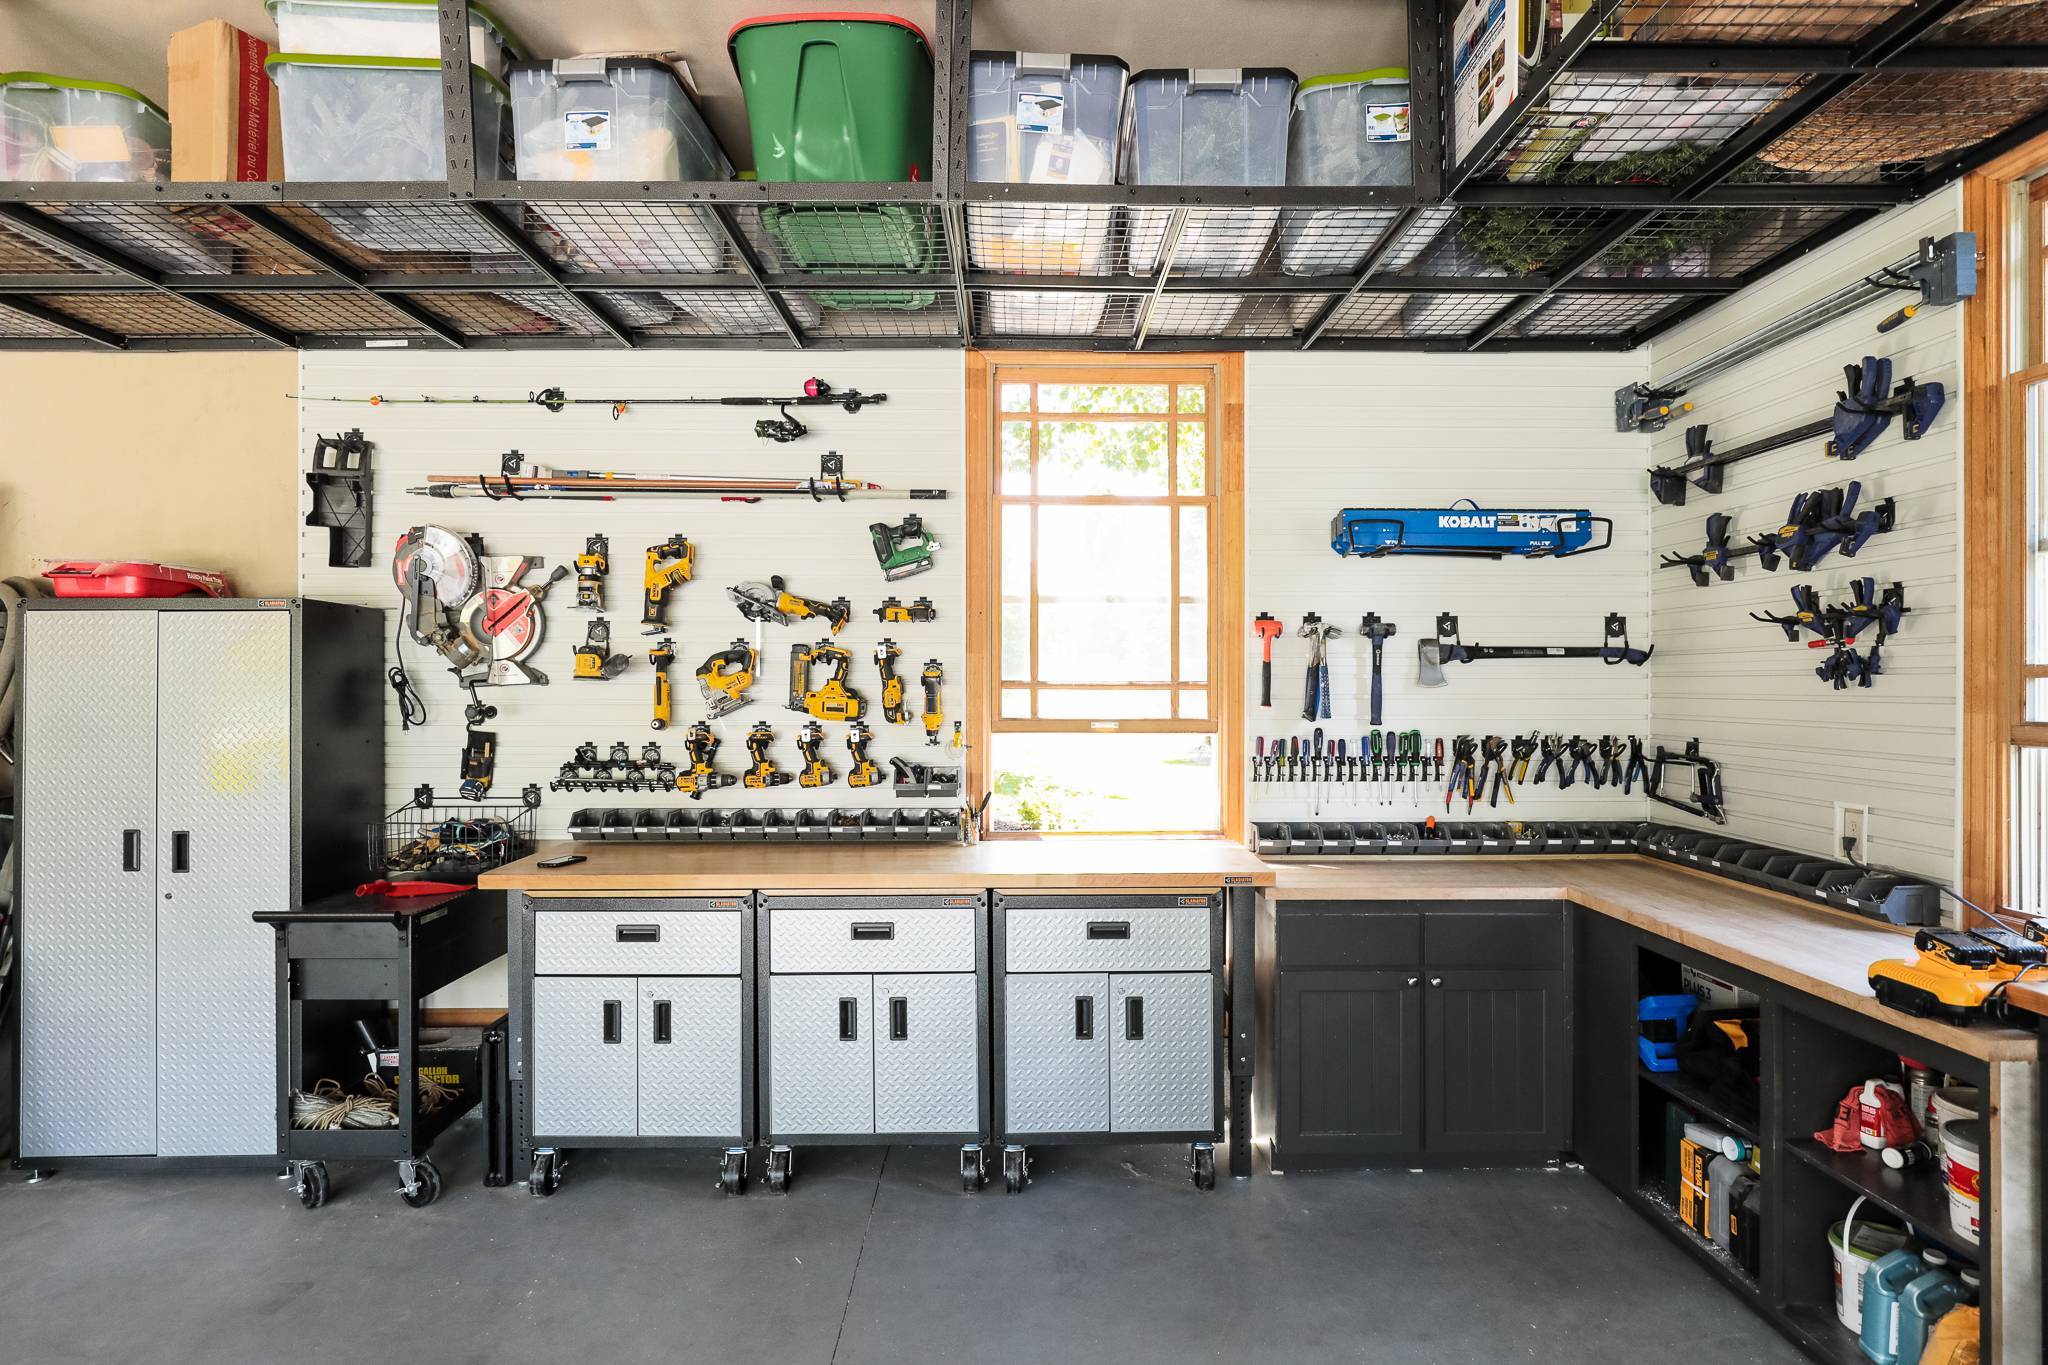 Внутренняя отделка гаража своими руками: материалы для отделки, чем лучше обшить